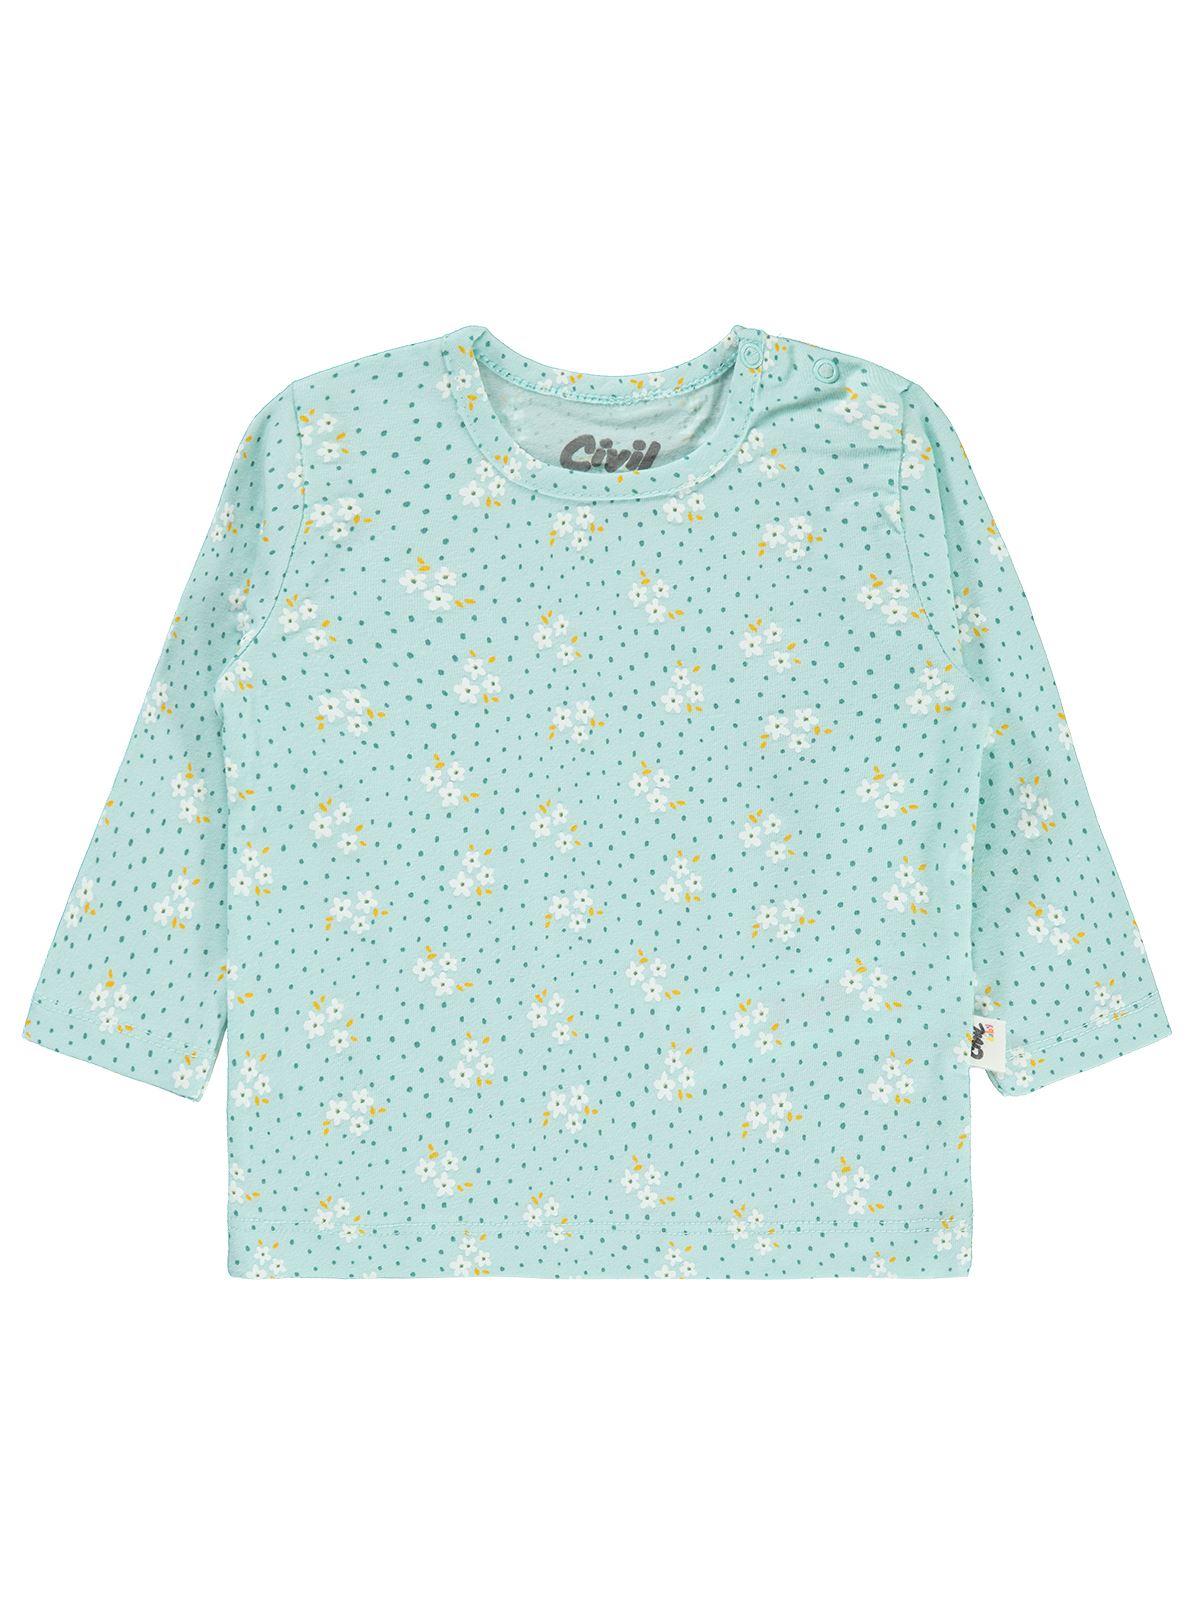 Civil Baby Kız Bebek Sweatshirt 6-18 Ay Mint Yeşili